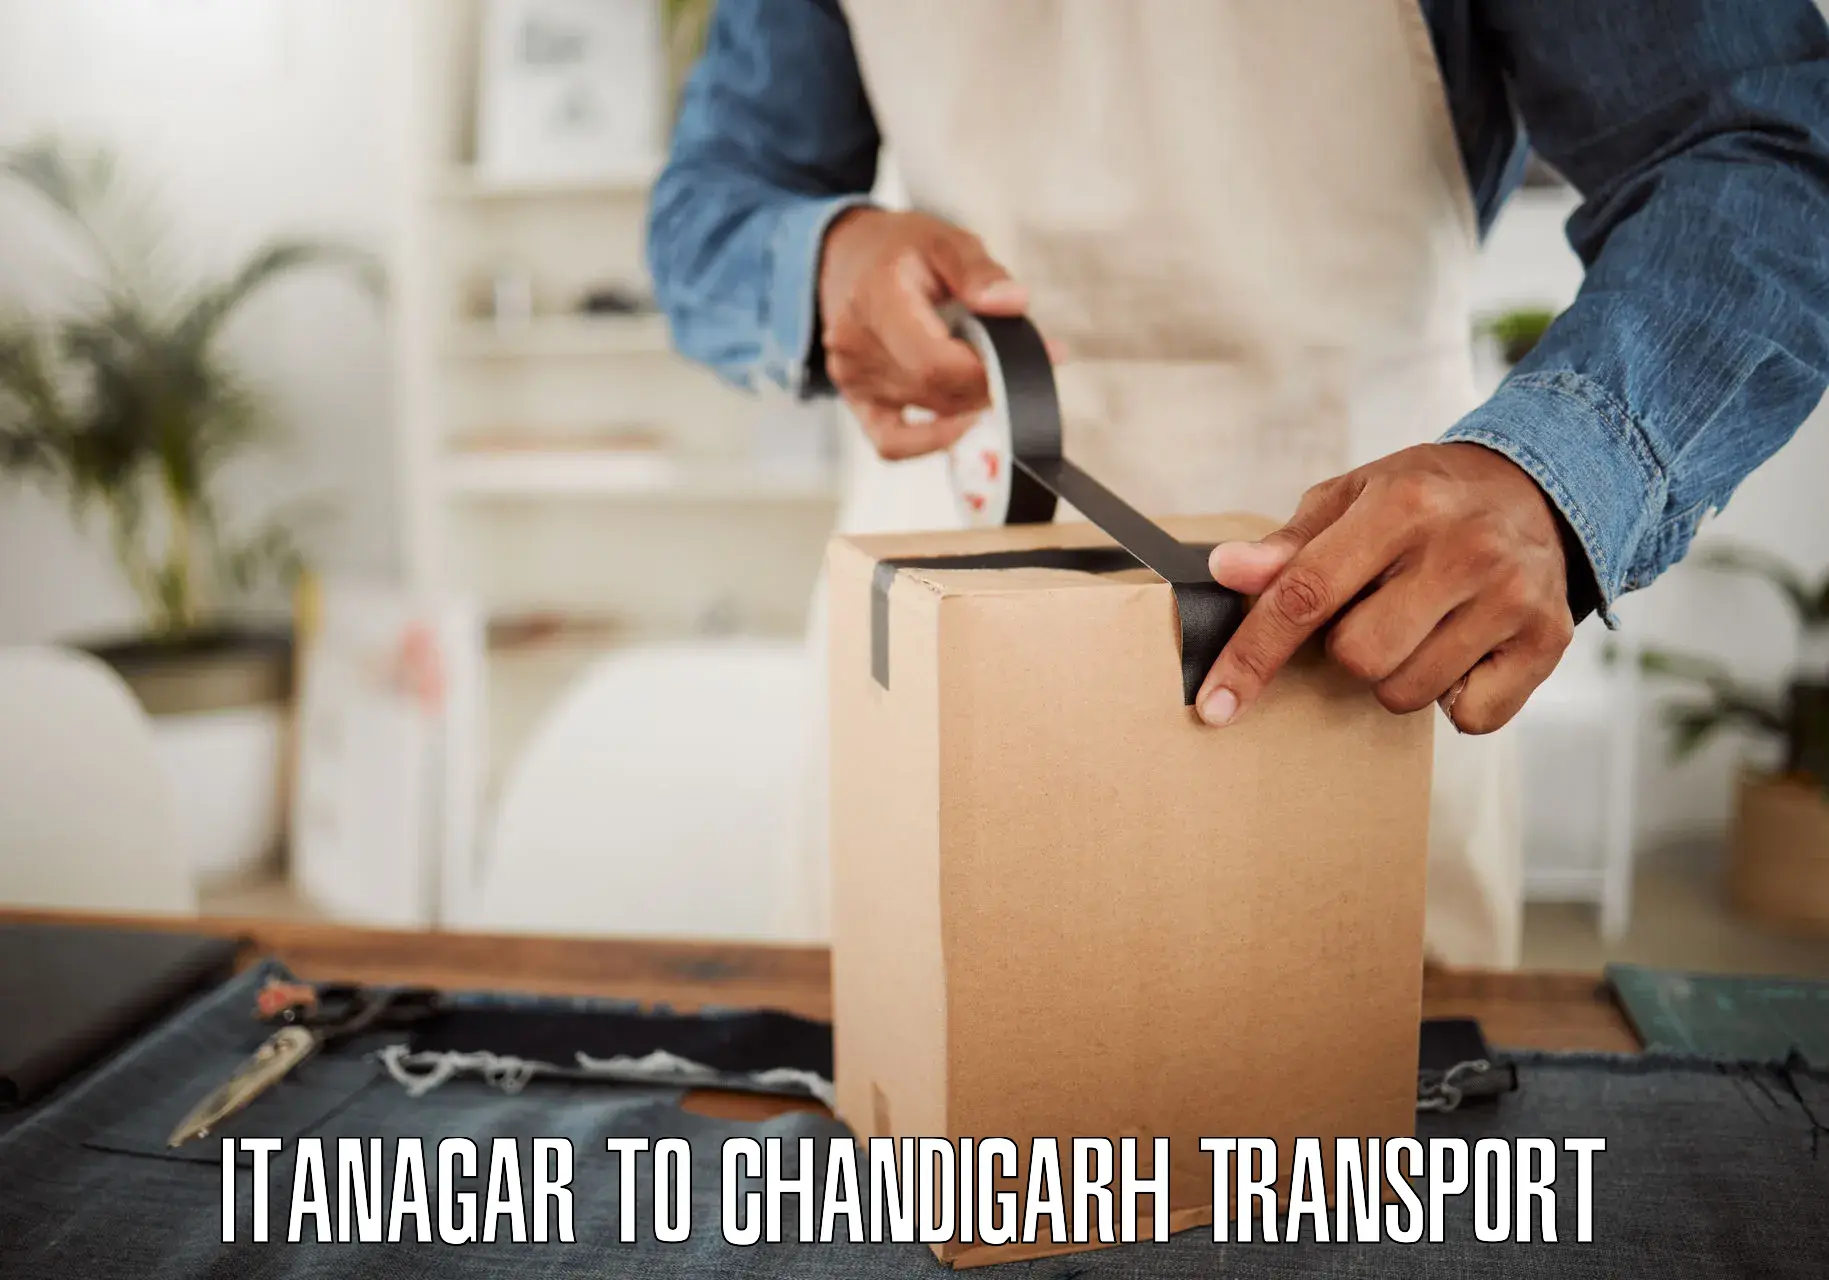 Bike transport service Itanagar to Chandigarh